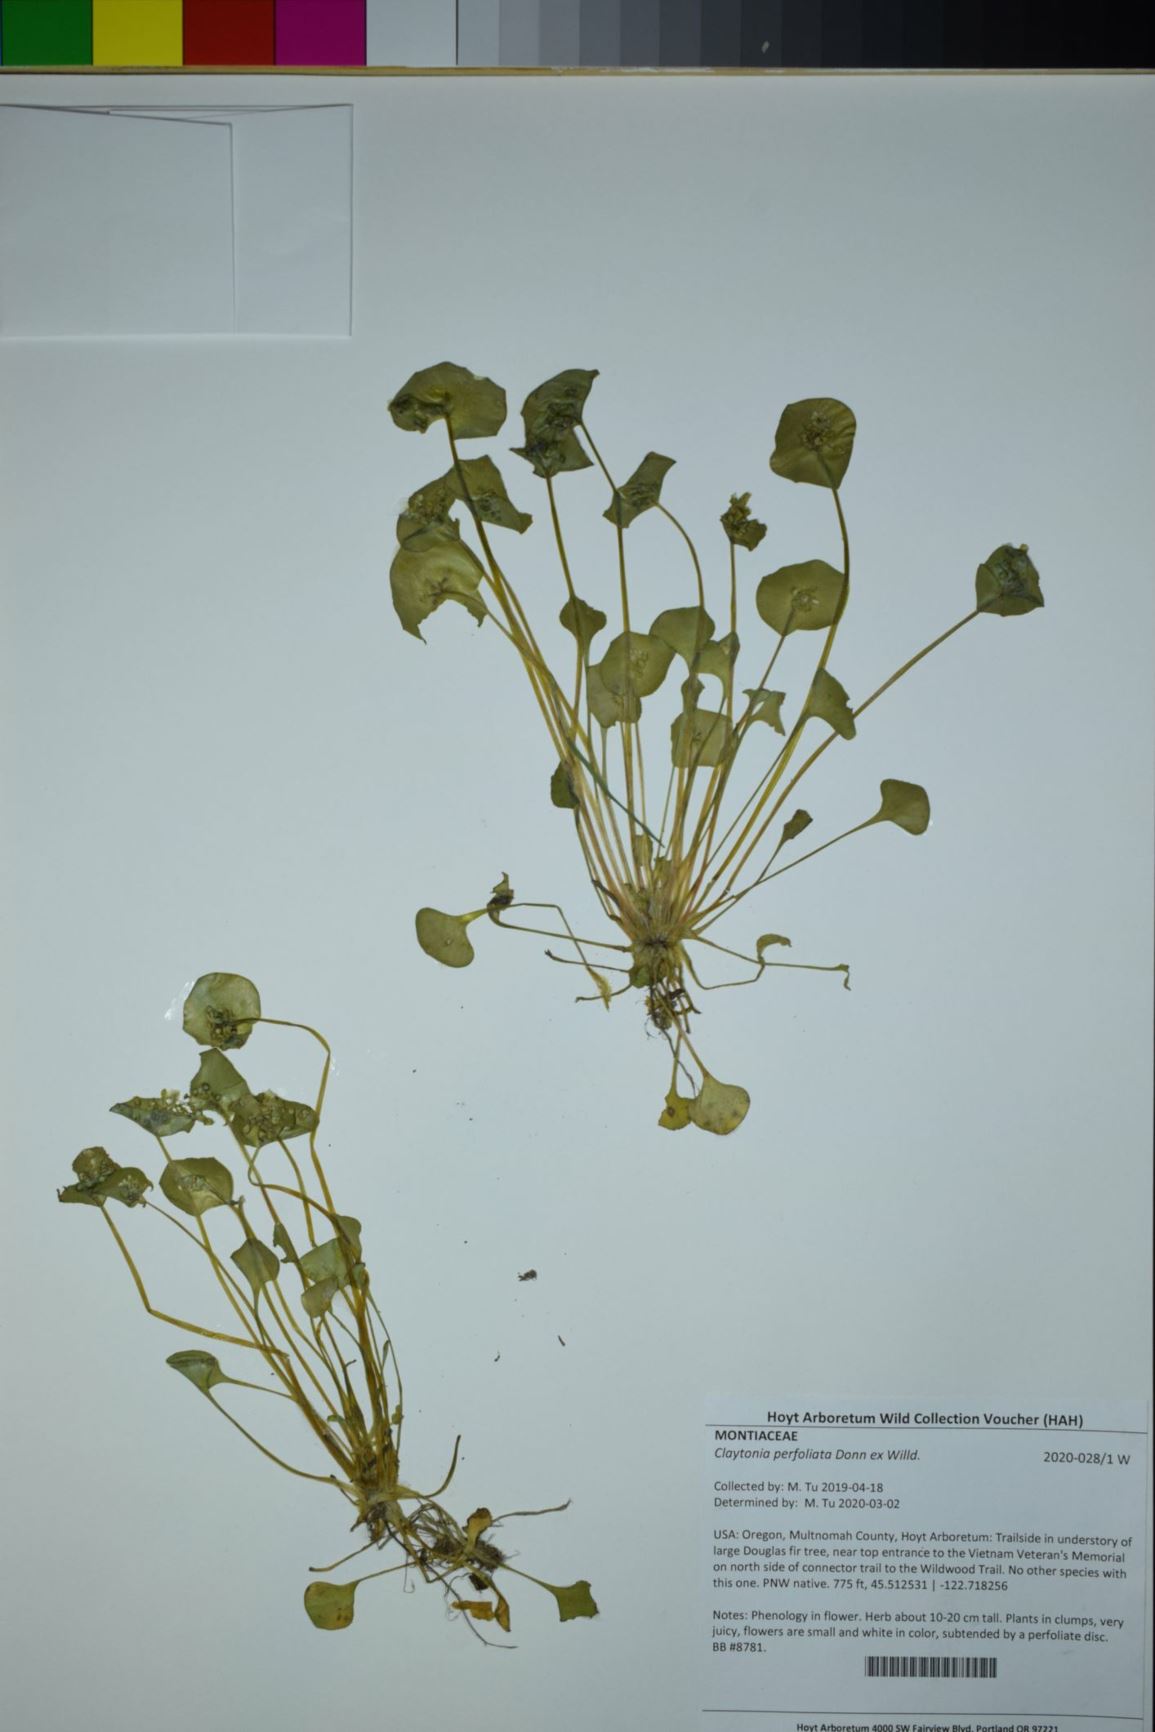 Claytonia perfoliata - minerslettuce, miner's lettuce